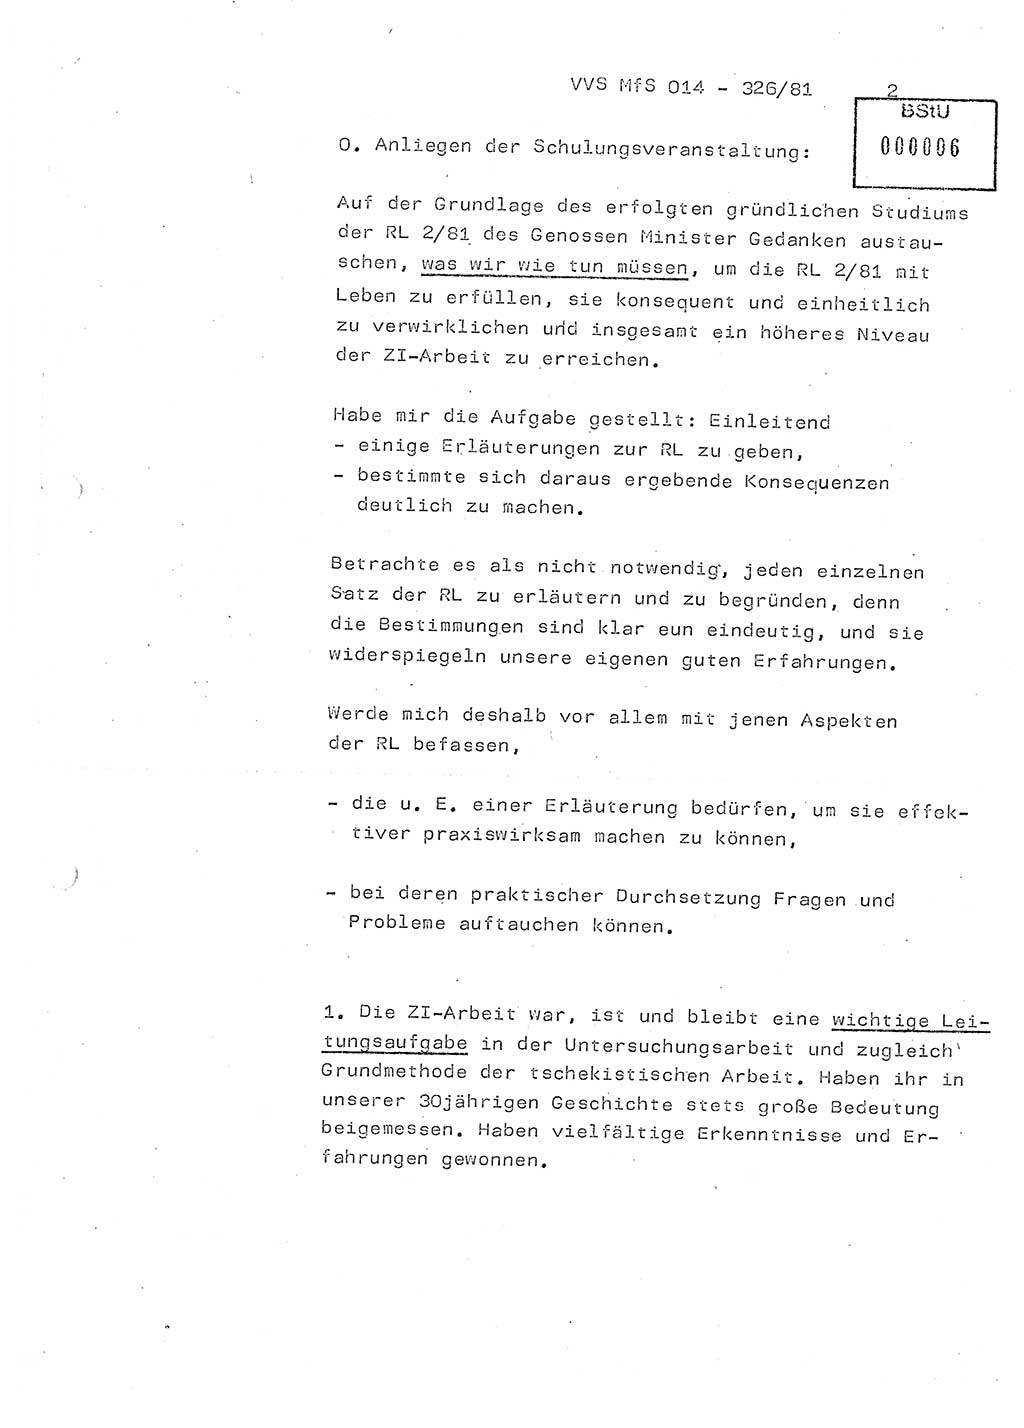 Thesen zum Einführungsvortrag für die Schulung zur Richtlinie Nr. 2/81 [zur Arbeit mit Zelleninformatoren (ZI)] des Genossen Minister (Generaloberst Erich Mielke), Ministerium für Staatssicherheit (MfS) [Deutsche Demokratische Republik (DDR)], Hauptabteilung (HA) Ⅸ, Vertrauliche Verschlußsache (VVS) 014-326/81, Berlin 1981, Seite 2 (Th. Sch. RL 2/81 MfS DDR HA Ⅸ VVS 014-326/81 1981, S. 2)